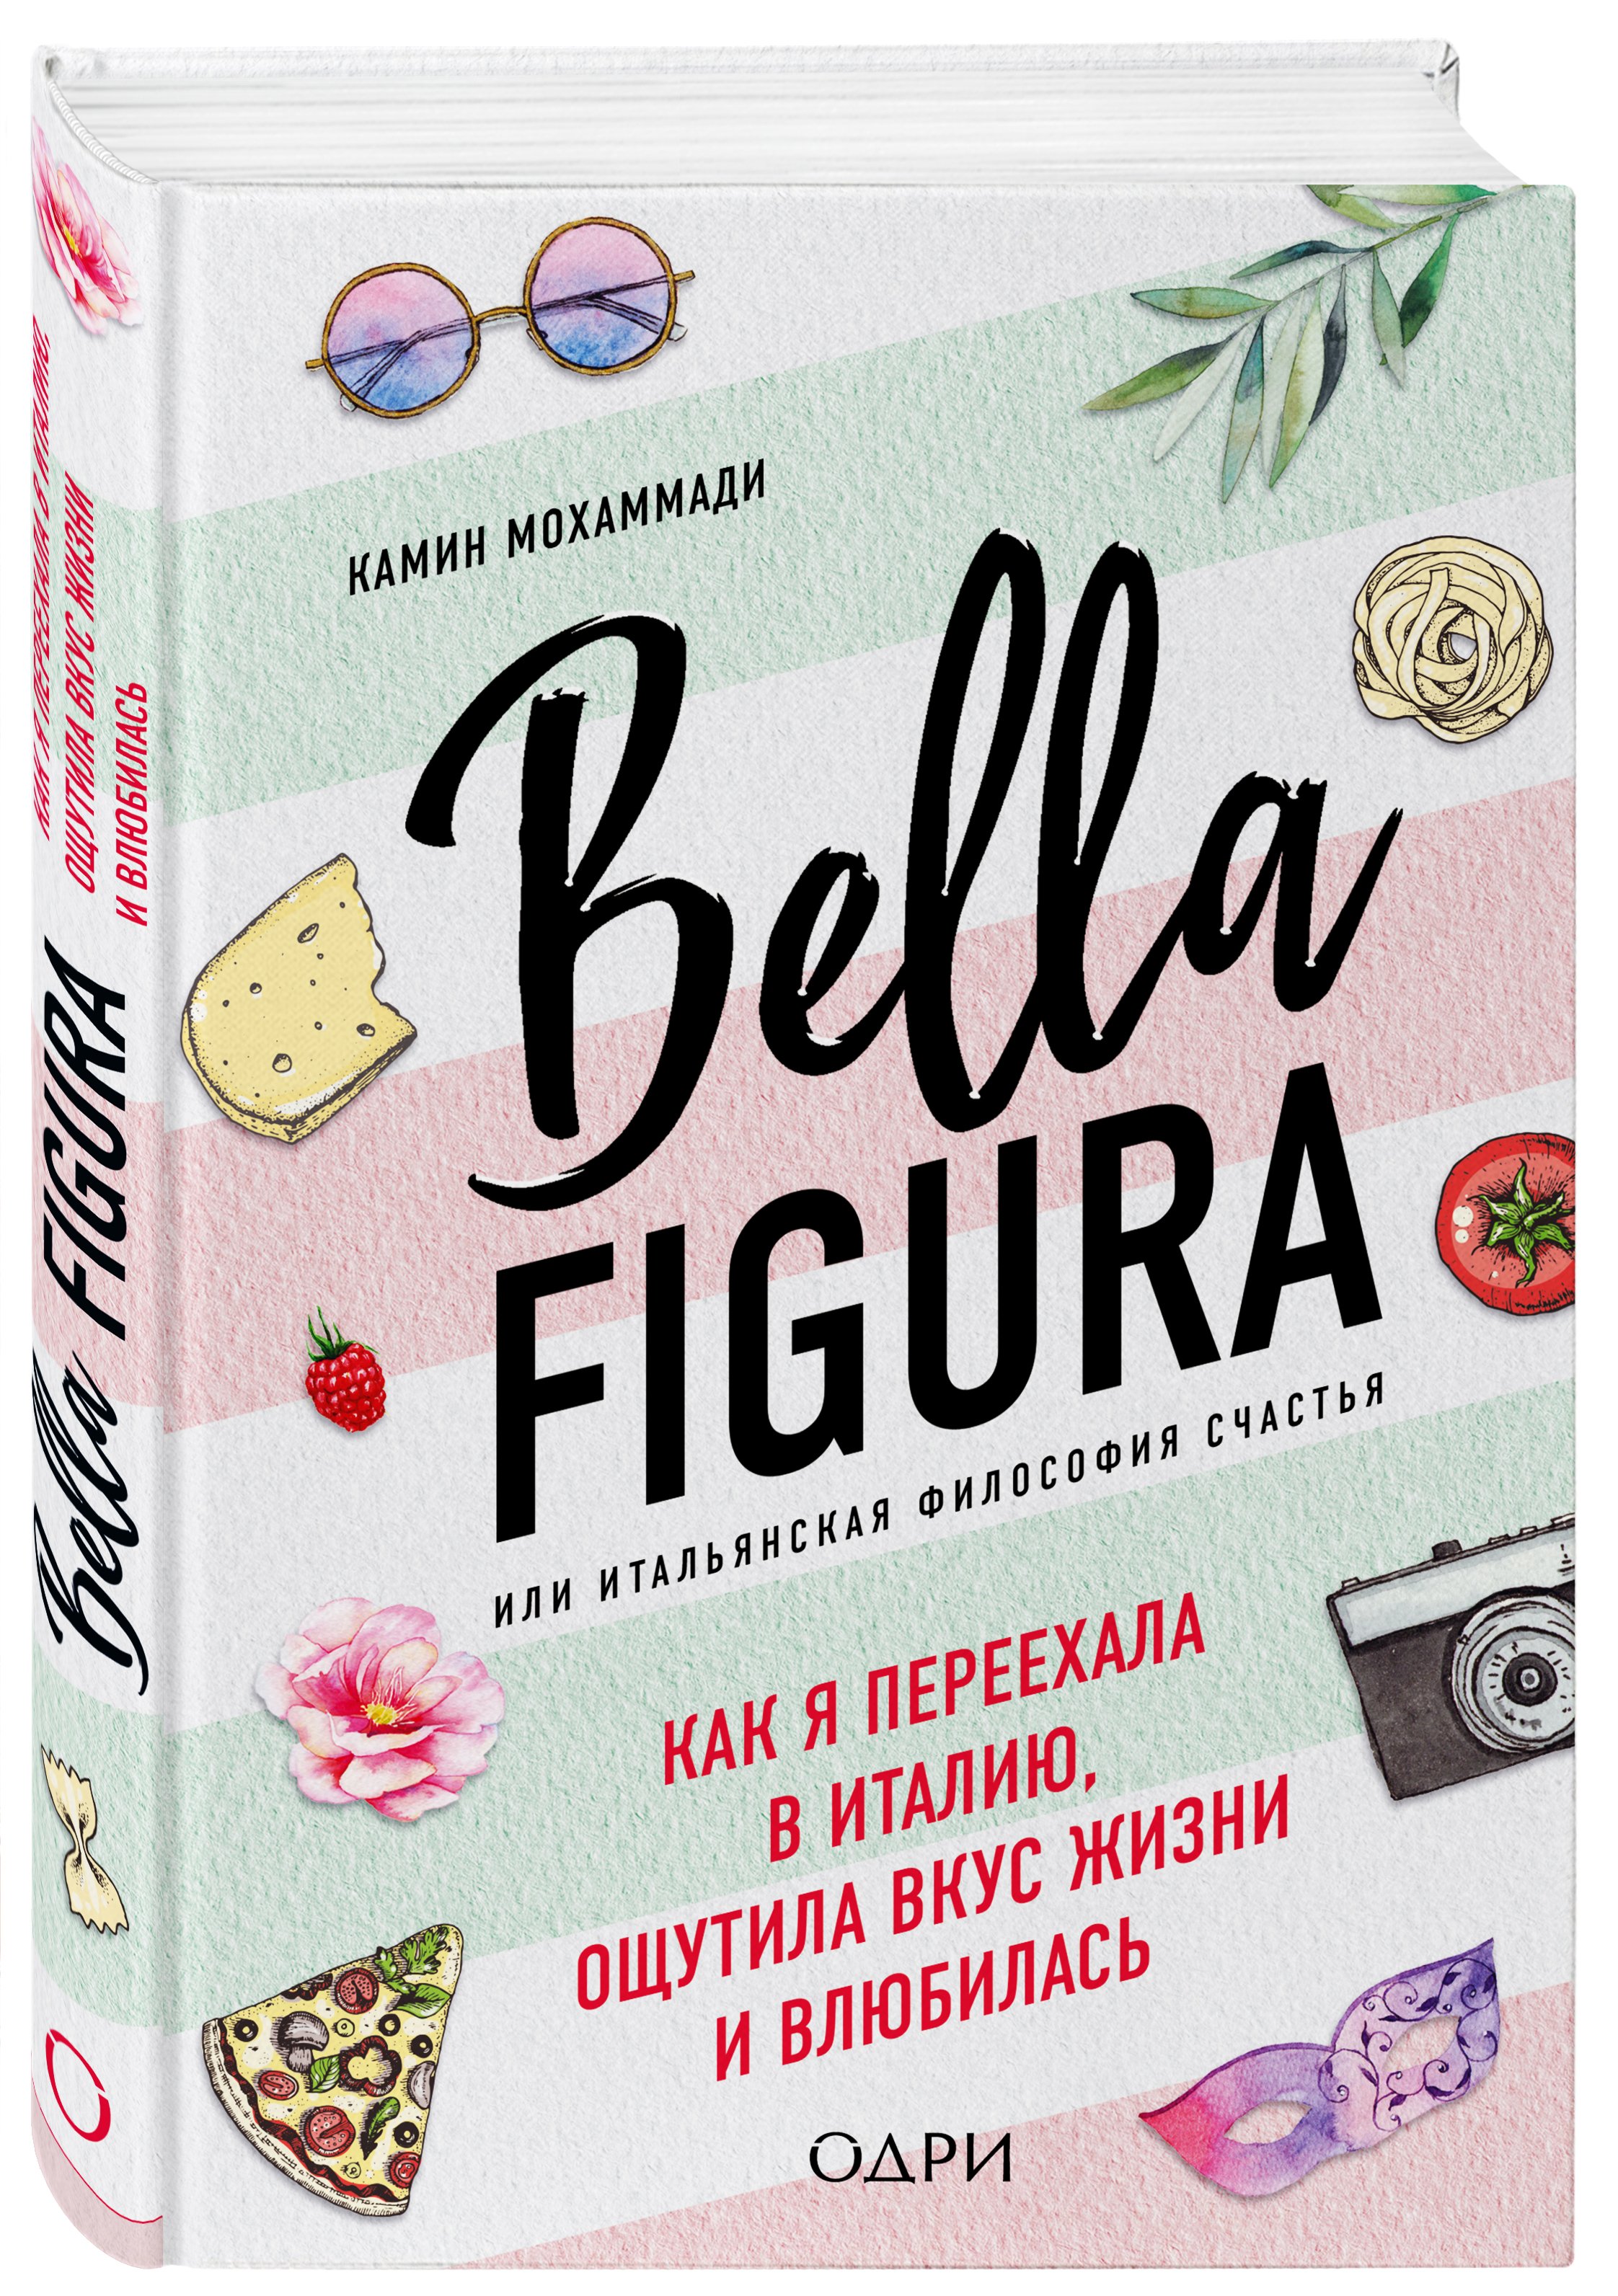 Bella Figura, или Итальянская философия счастья. Как я переехала в Италию, ощутила вкус жизни и влюбилась. Мохаммади Камин